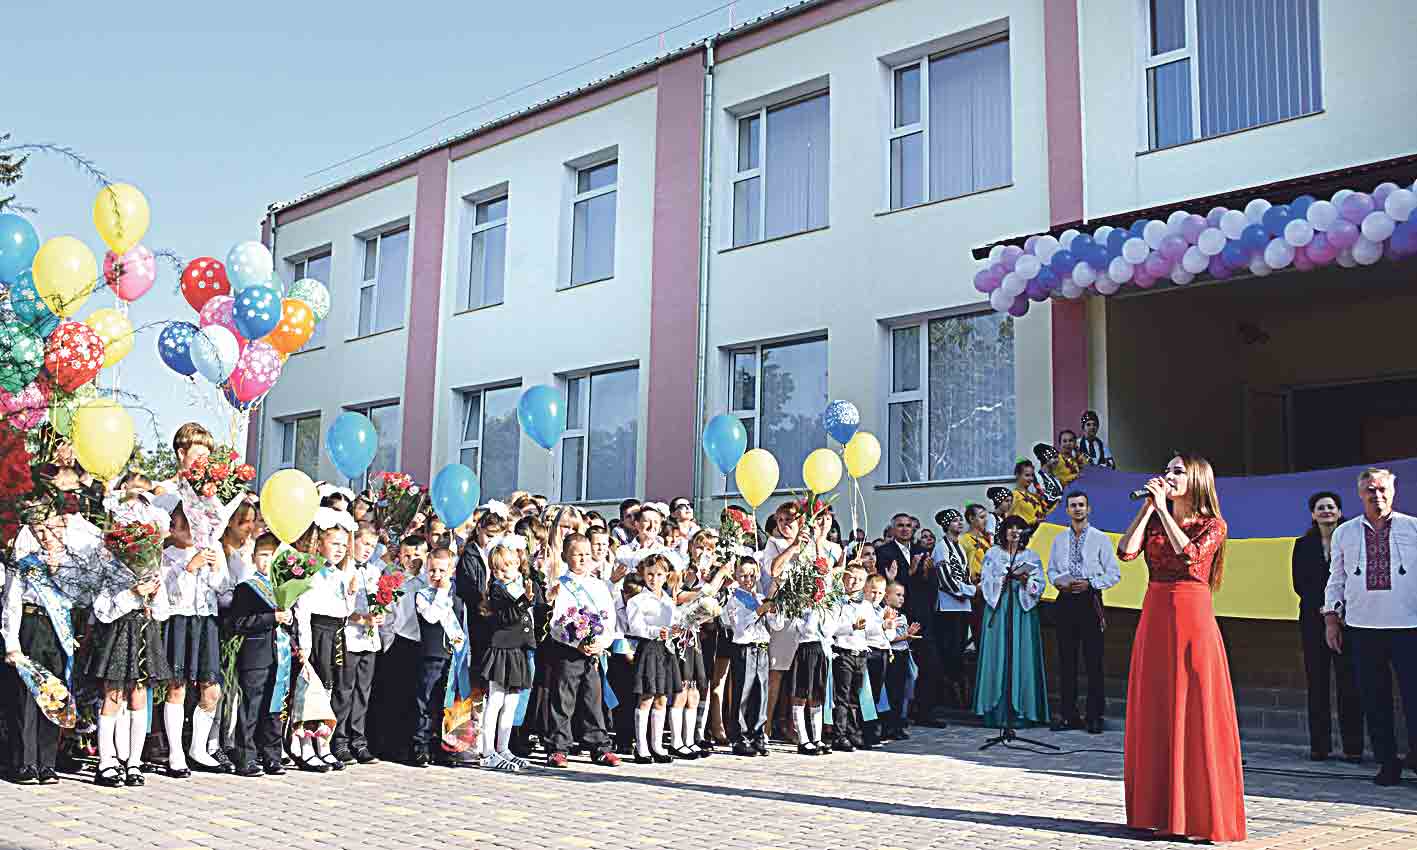 Ще 8 навчальних закладів Вінниччини отримують державну субвенцію